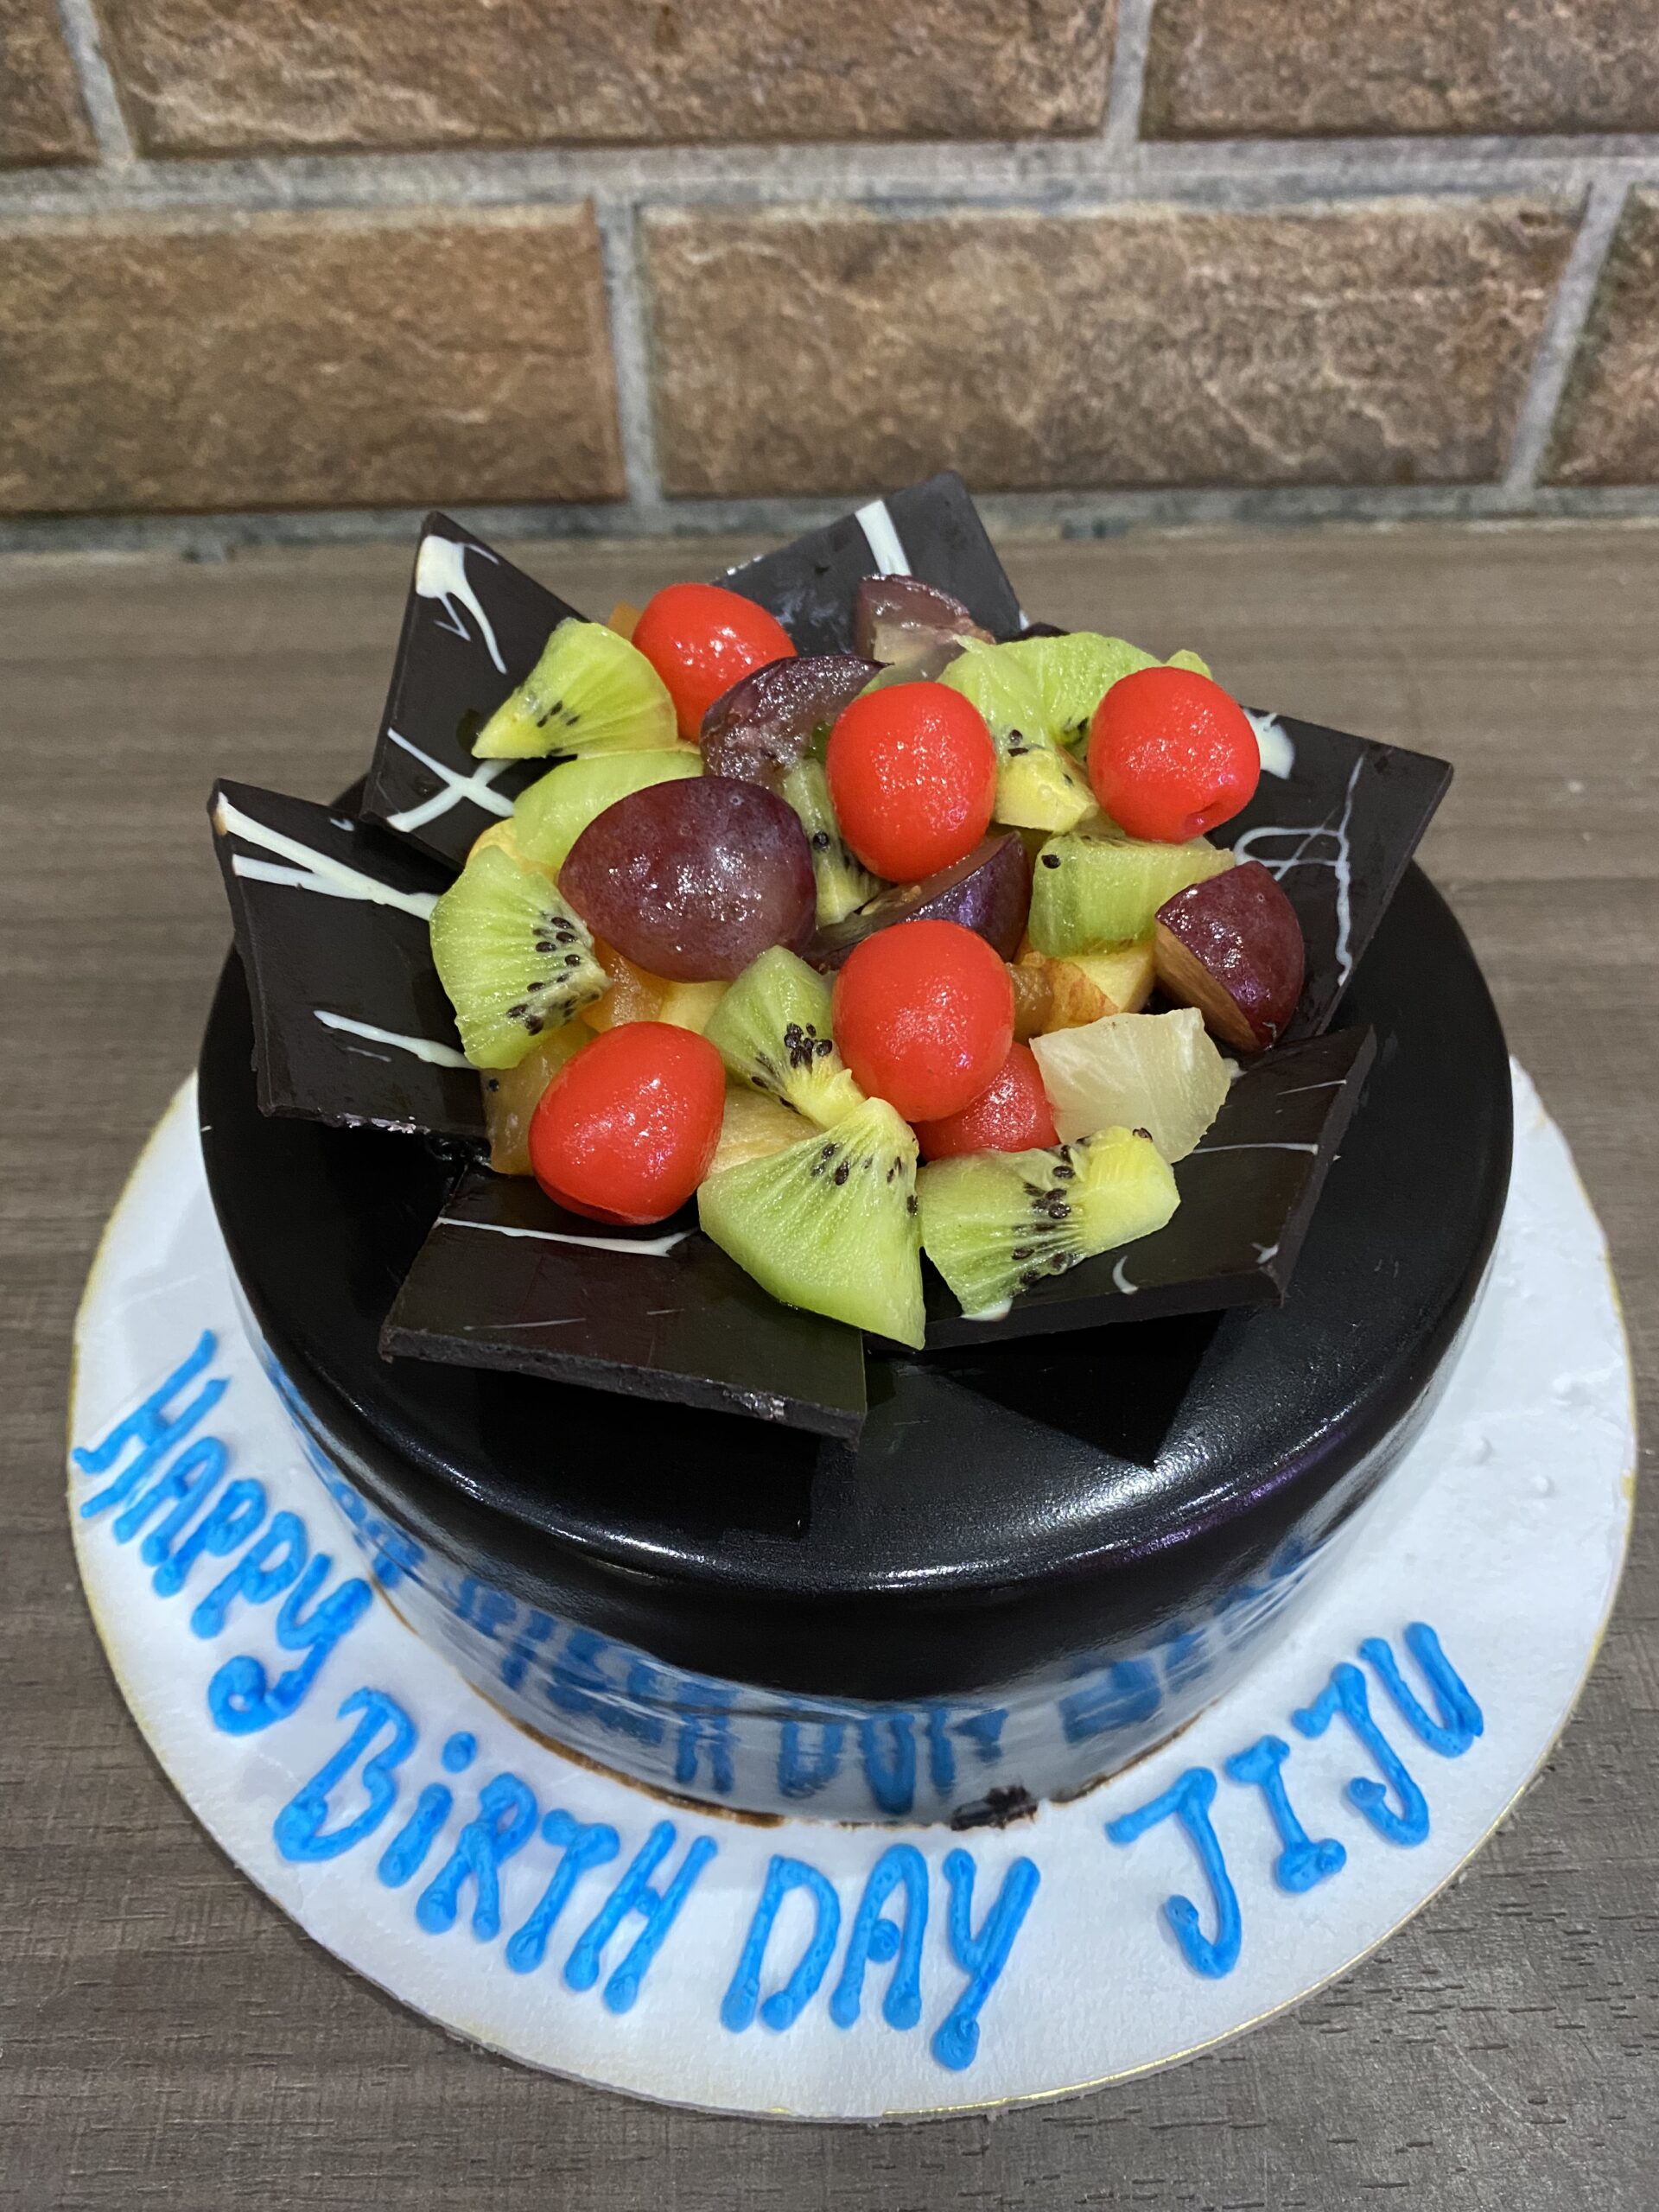 Top more than 73 cake for jiju - in.daotaonec